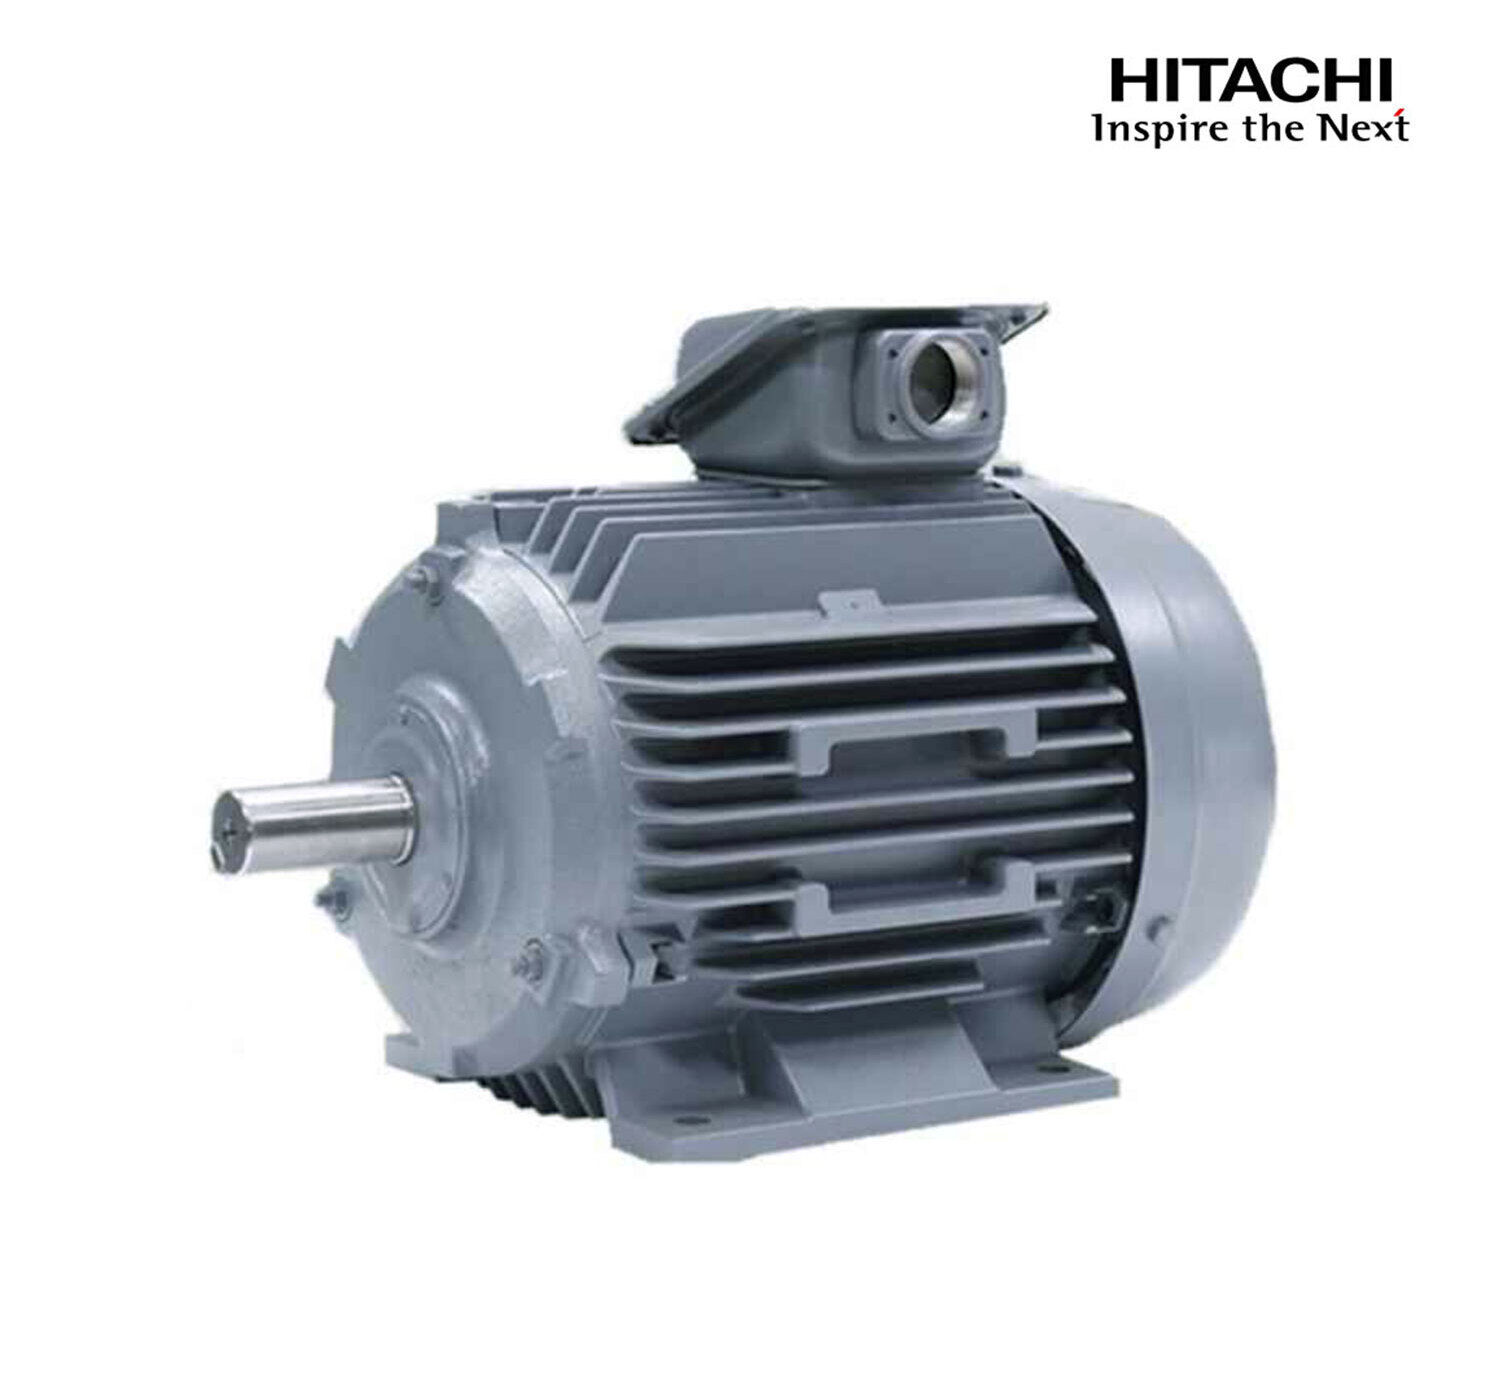 มอเตอร์ฮิตาชิของแท้ 100% HITACHI รุ่น TFO-K กำลัง 2 แรงม้า (1.5 KW.) กำลังไฟฟ้าที่ใช้ 380V ความเร็วรอบตัวเปล่า 1450 RPM แกนเพลามอเตอร์ 24 MM.รับประกัน 3 ปี มีของพร้อมจัดส่งทุกวัน